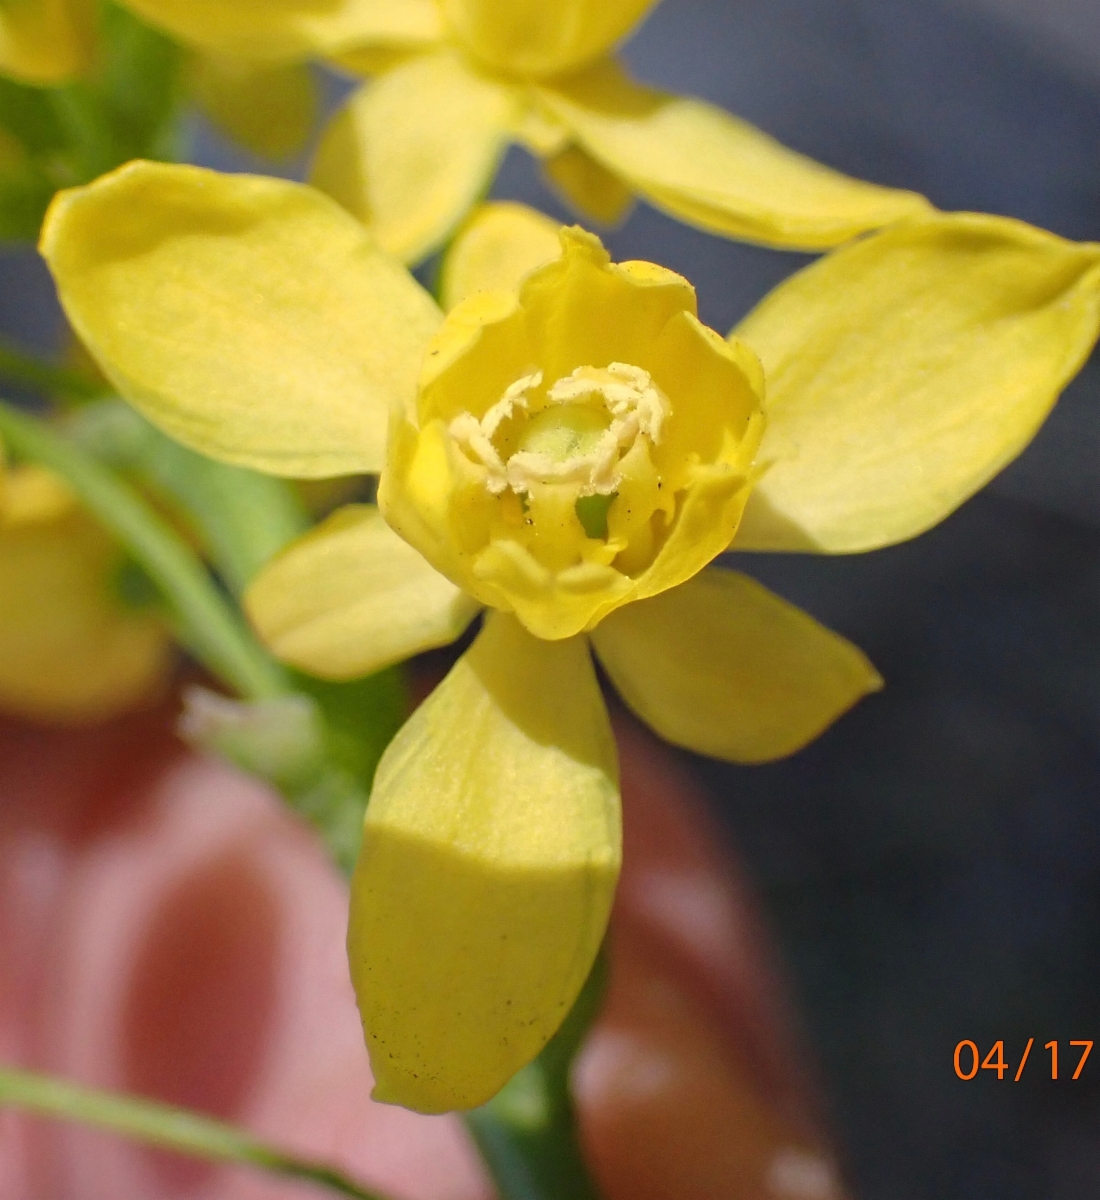 Berberis aquifolium var. dictyota